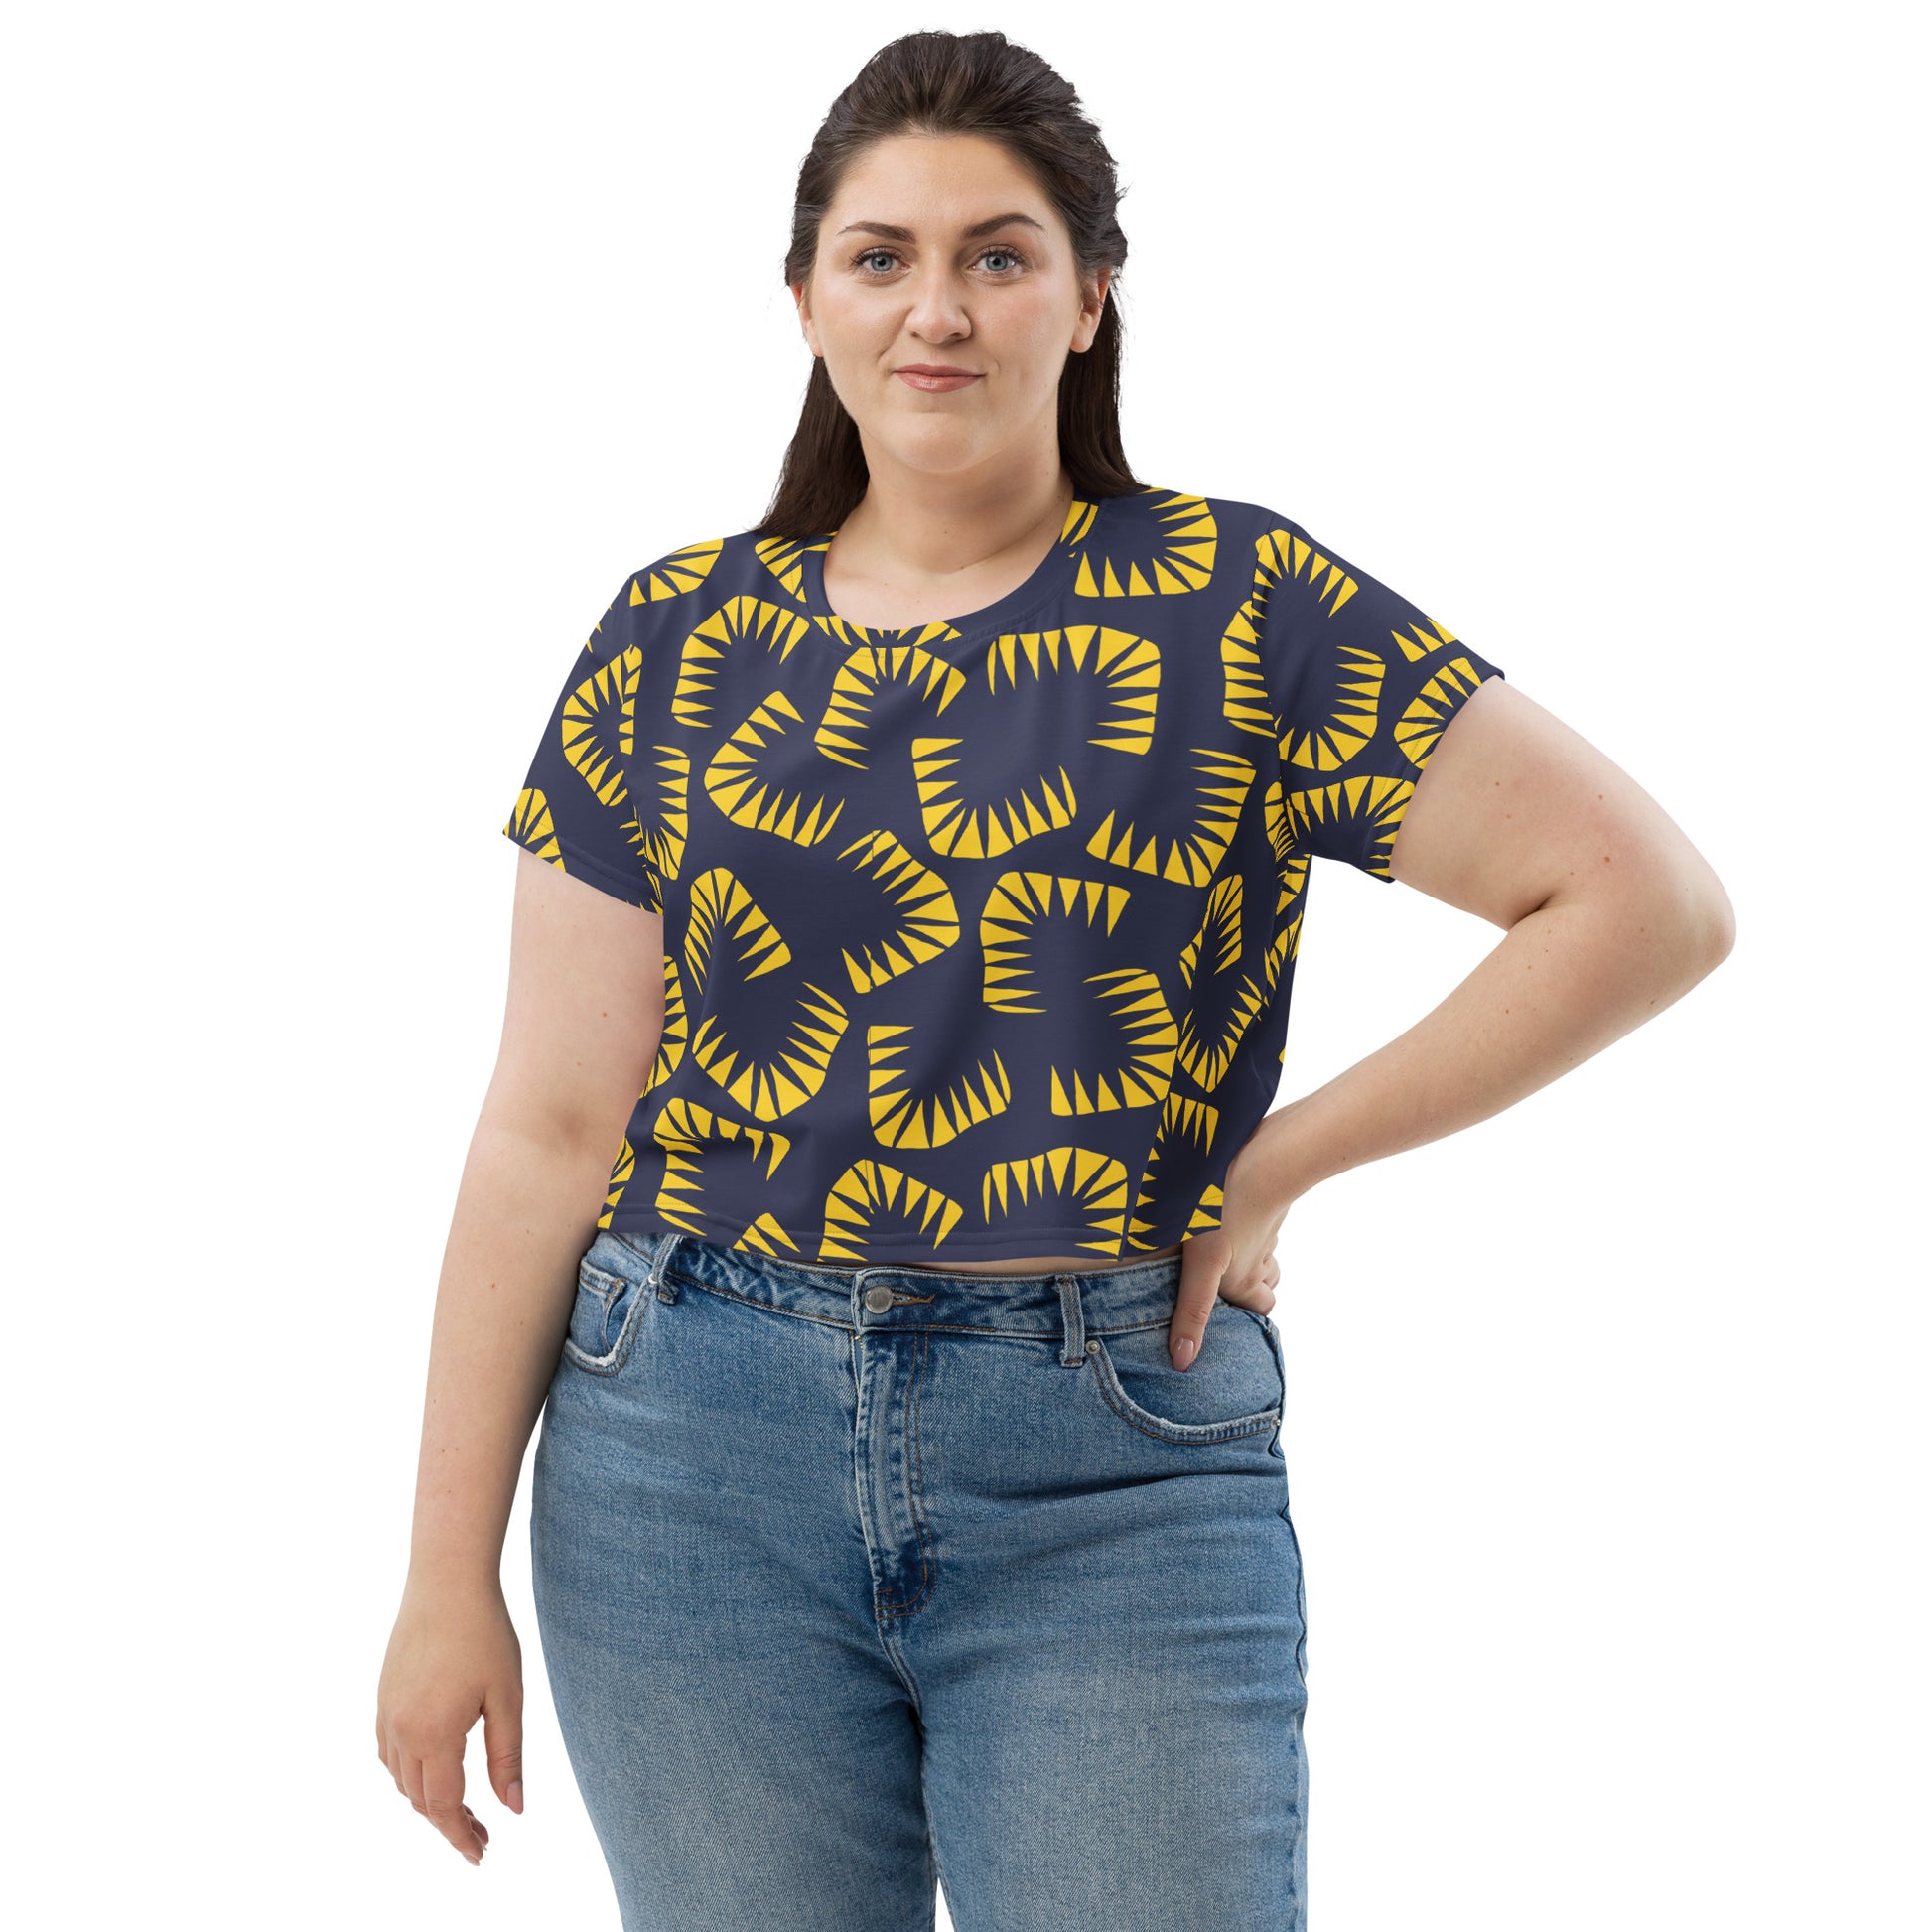 Women's Modern Abstract Shapes Crop Tee T-shirt